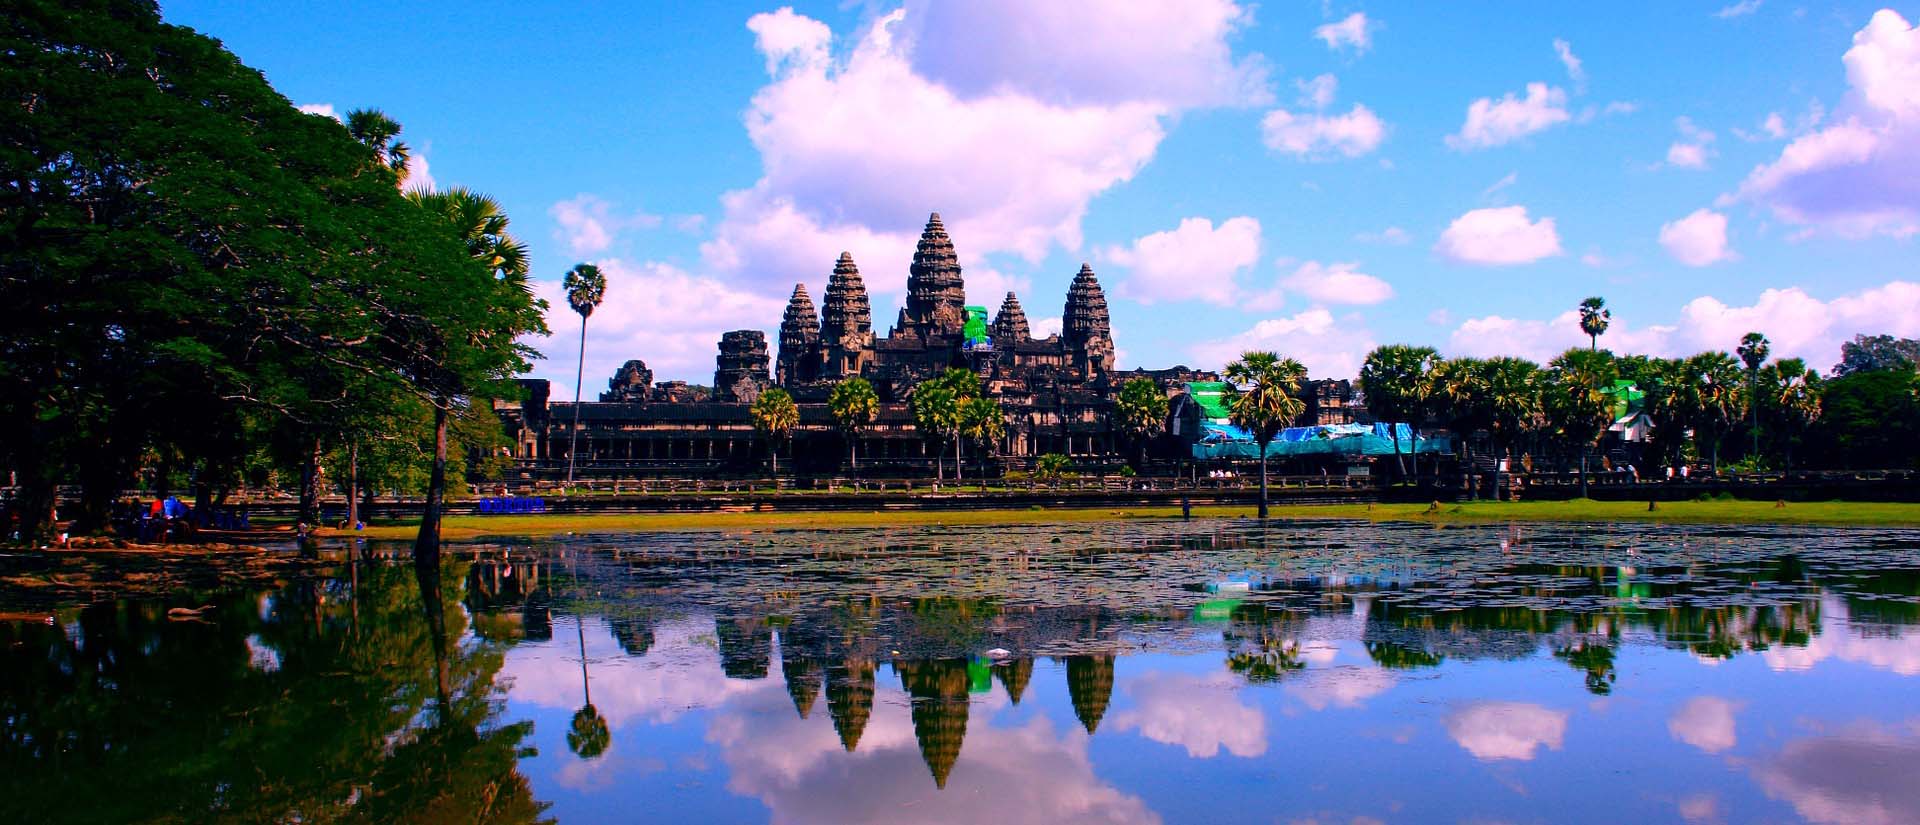 Авиабилеты в Камбоджу - забронировать онлайн